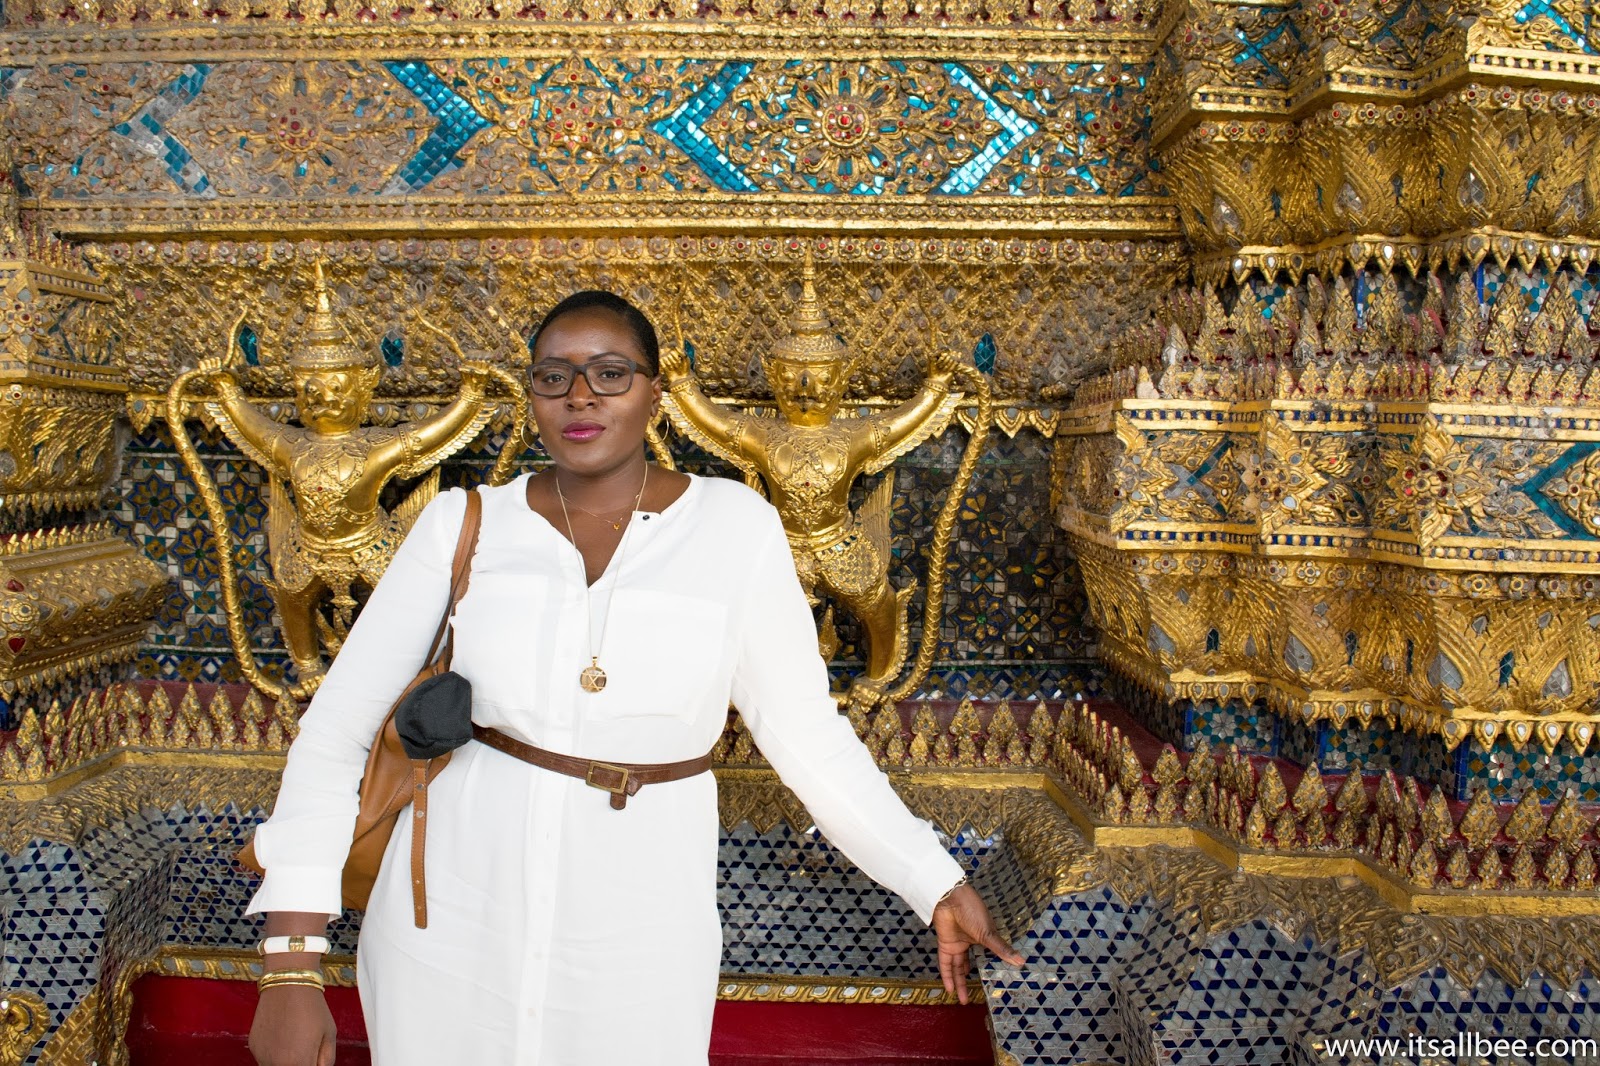 Grand Palace Bangkok | Tips For Visiting And Dress Code